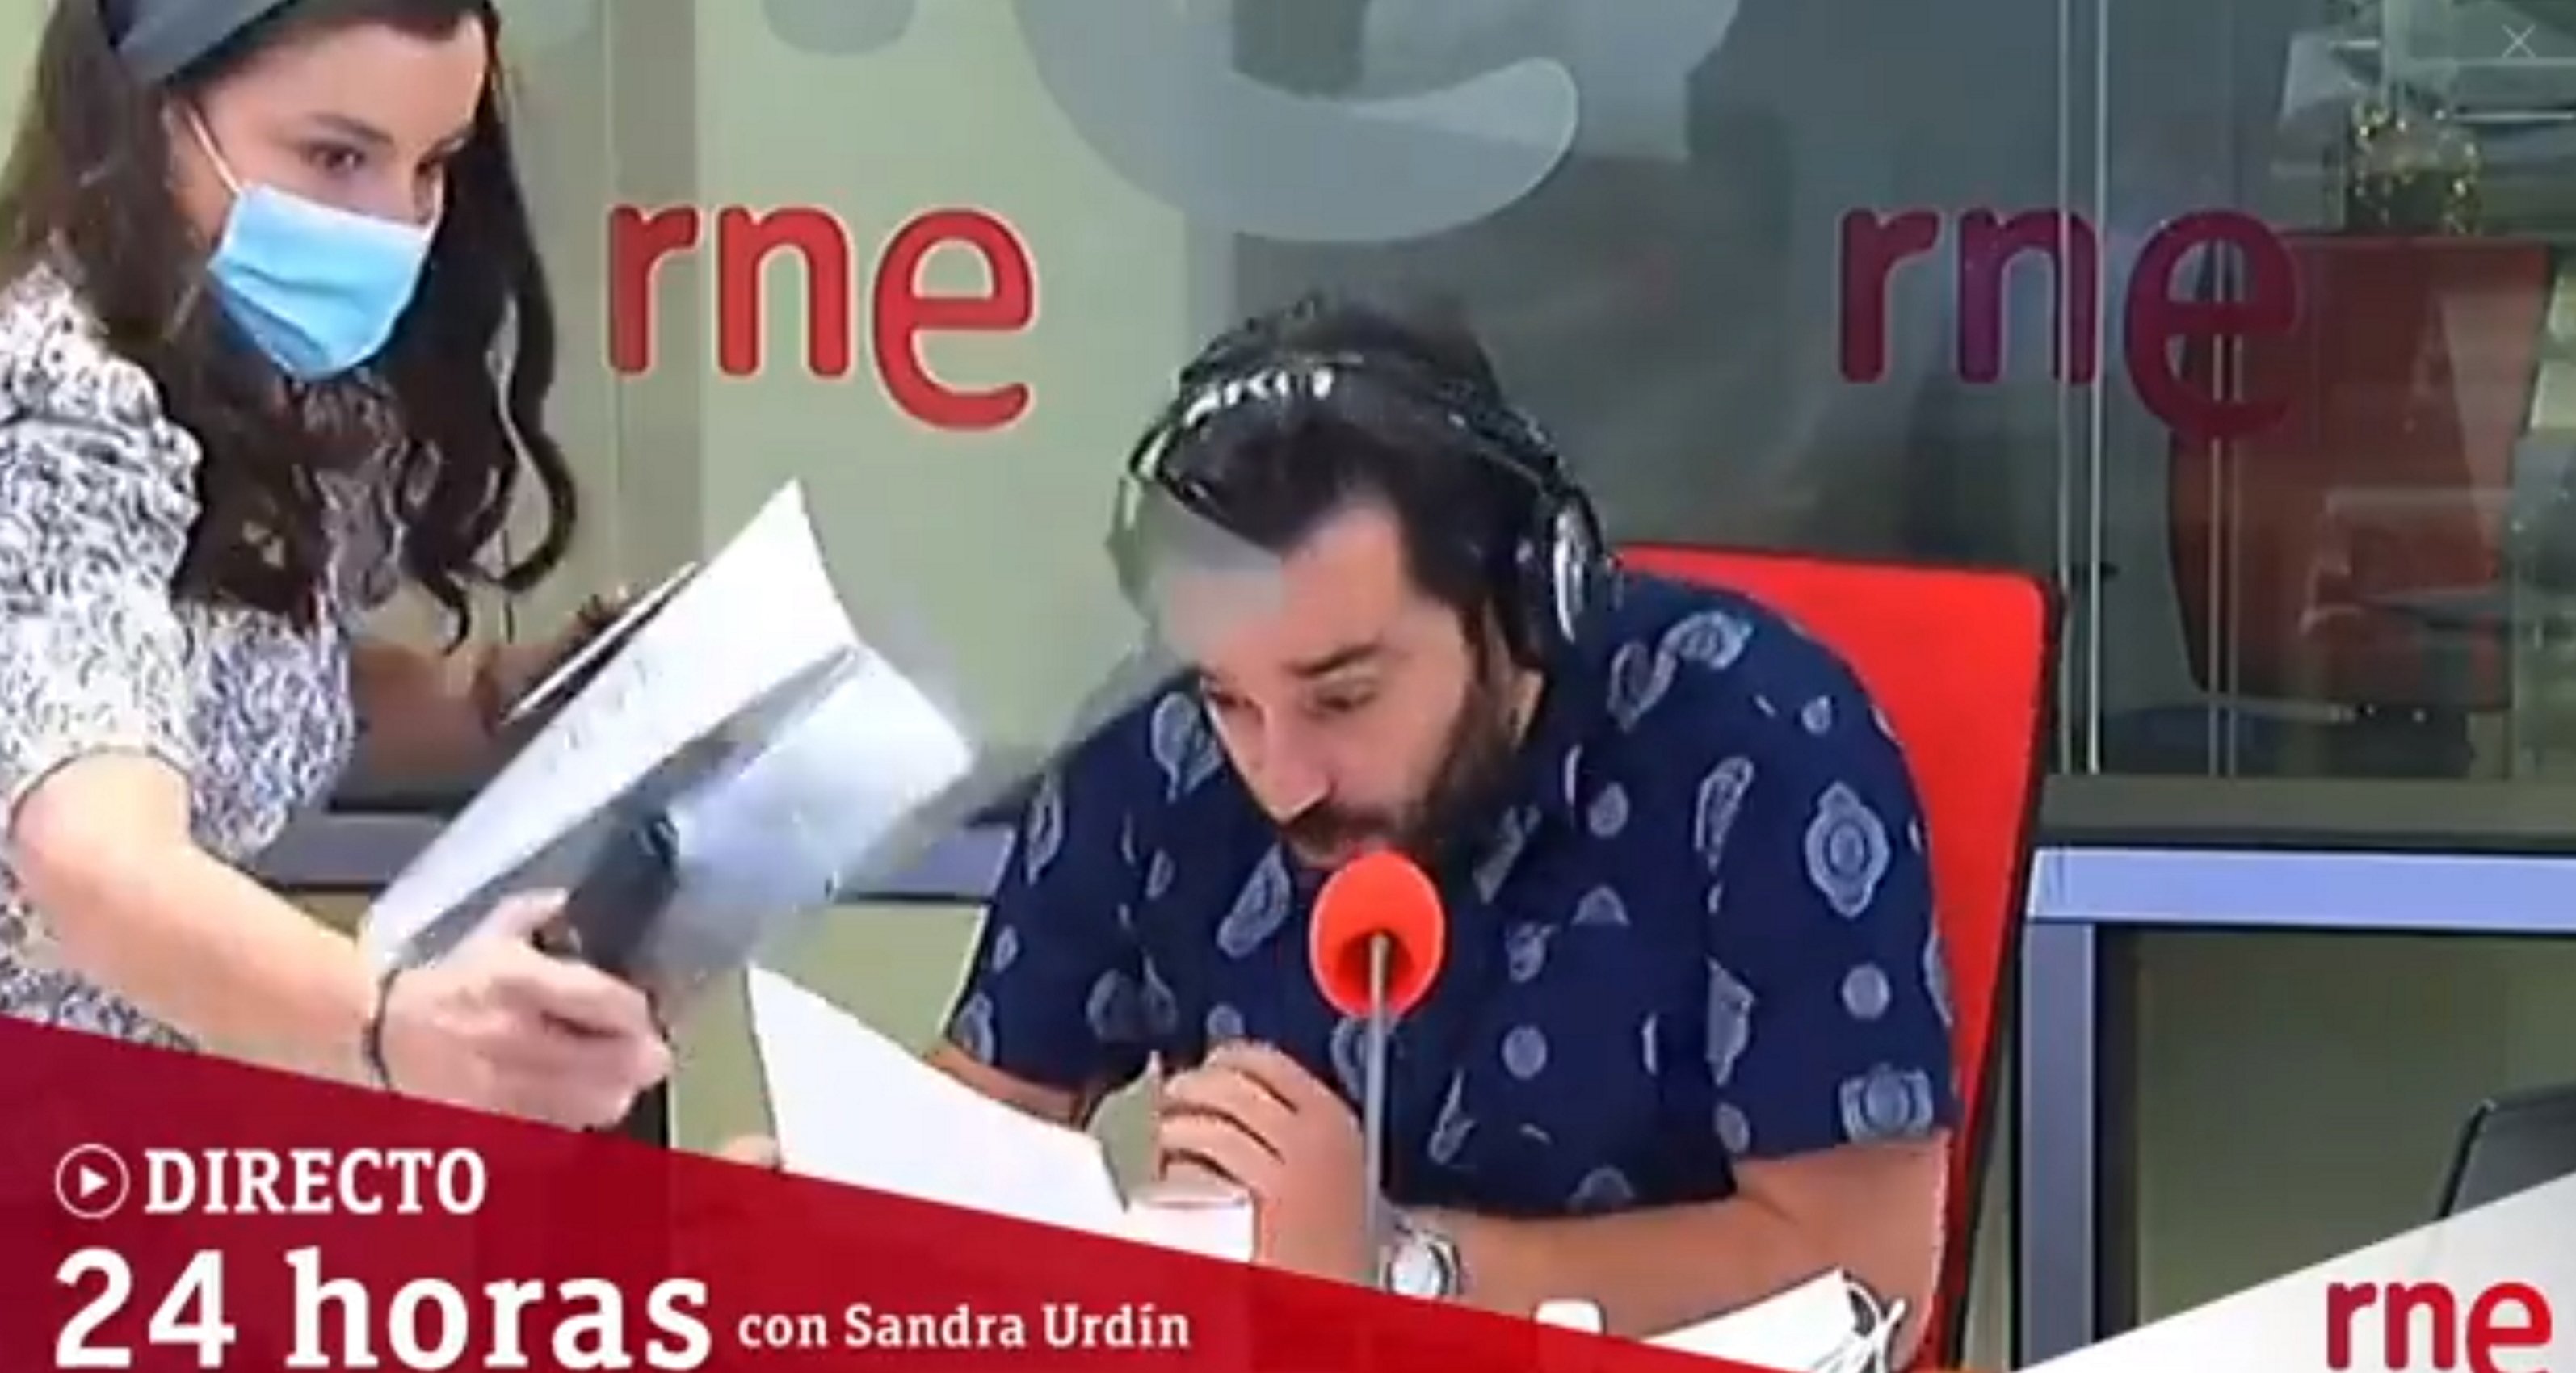 Accident en directe a Ràdio Nacional d'Espanya: un presentador se salva de miracle